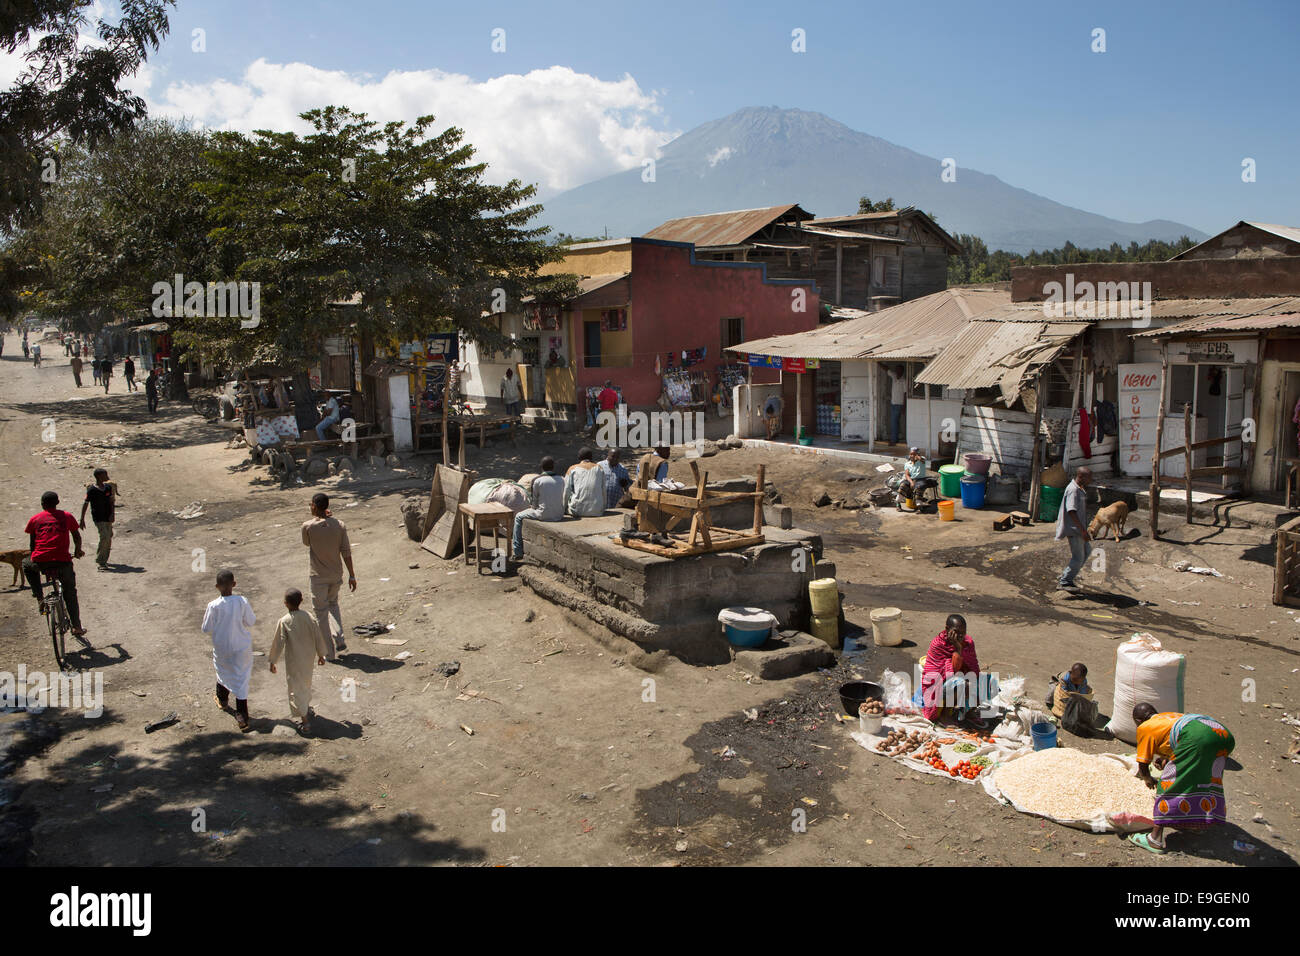 Straße in Arusha, Tansania, mit Mt. Meru im Hintergrund - Ost-Afrika. Stockfoto